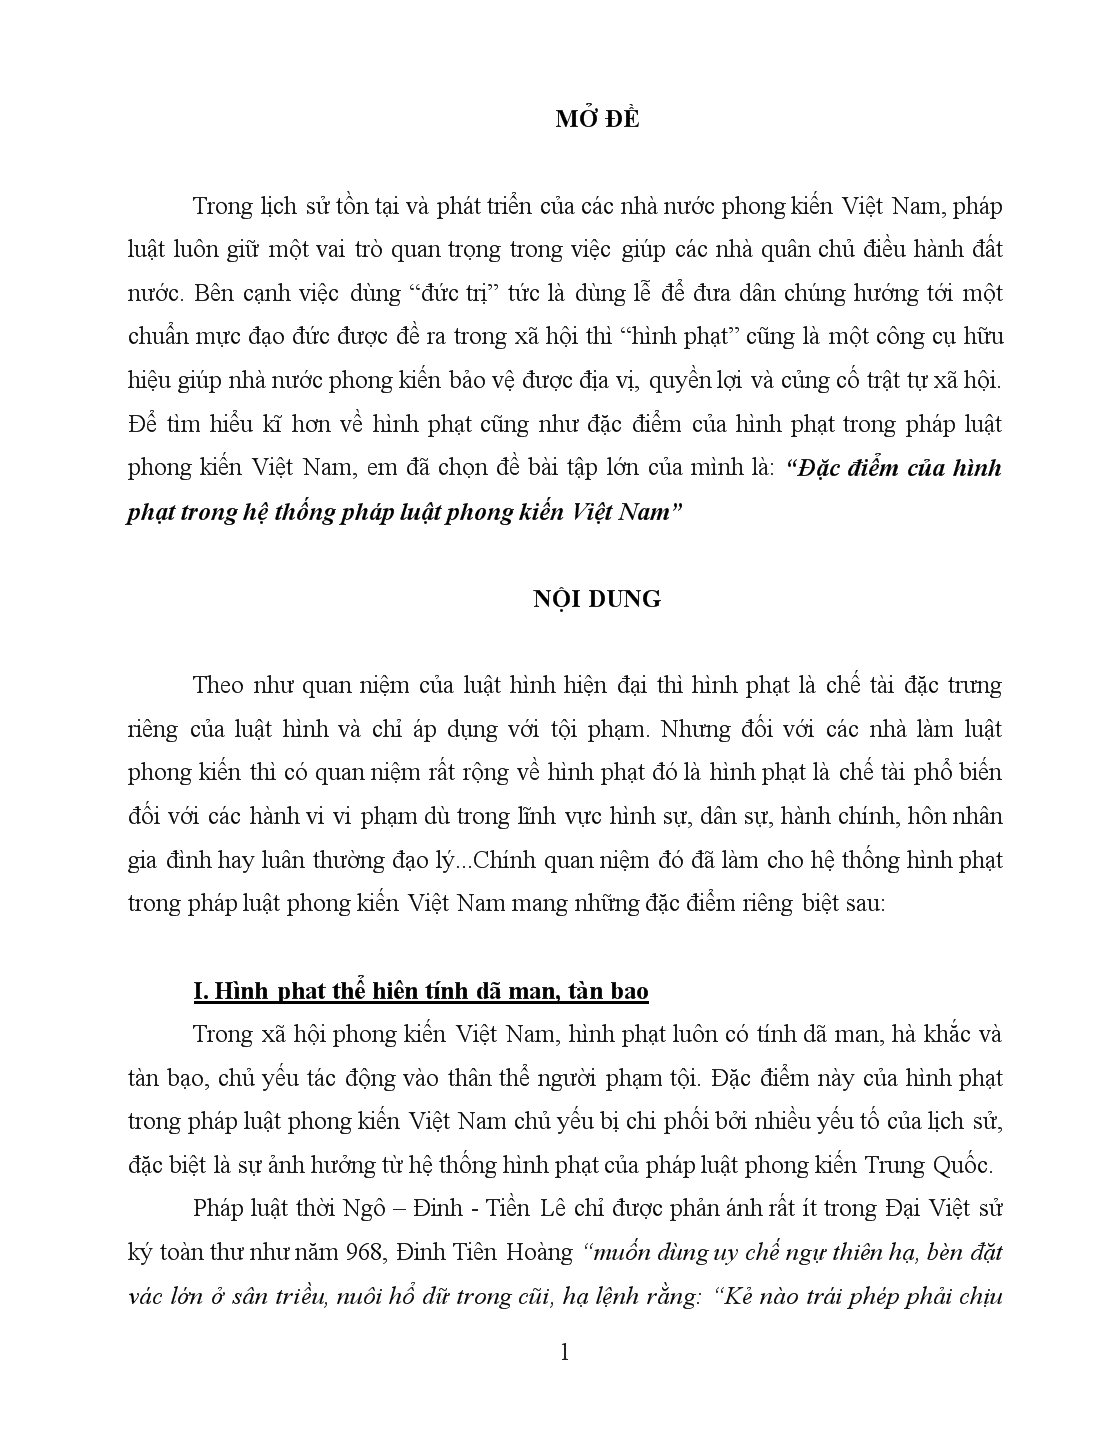 Đề tài Đặc điểm của hình phạt trong hệ thống pháp luật phong kiến Việt Nam trang 1